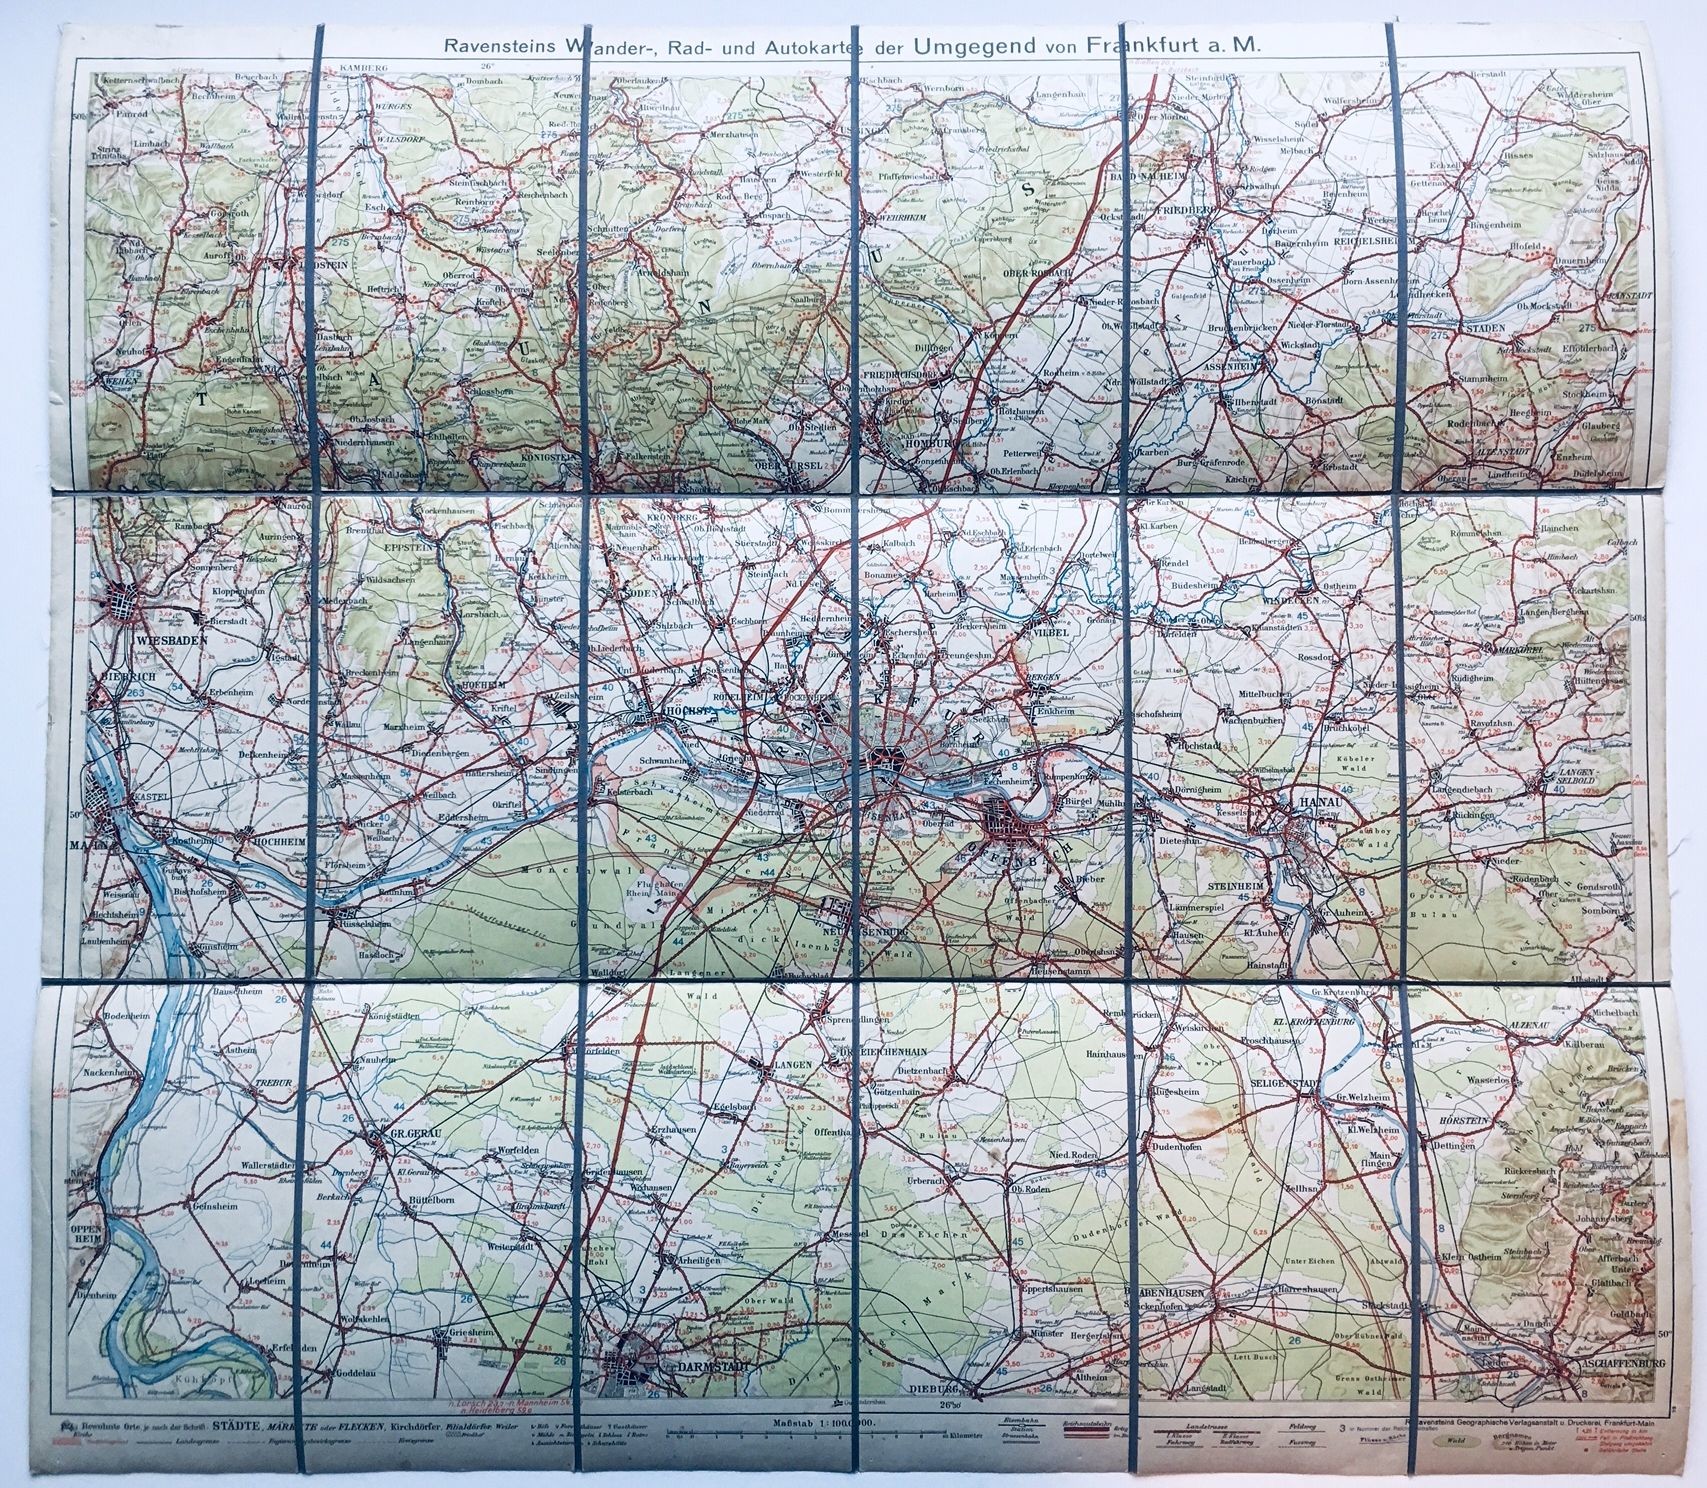 Ravensteins Wander-, Rad- und Autokarte der Umgebung von Frankfurt a. M., ca. 1935. (Taunus-Rhein-Main - Regionalgeschichtliche Sammlung Dr. Stefan Naas CC BY-NC-SA)